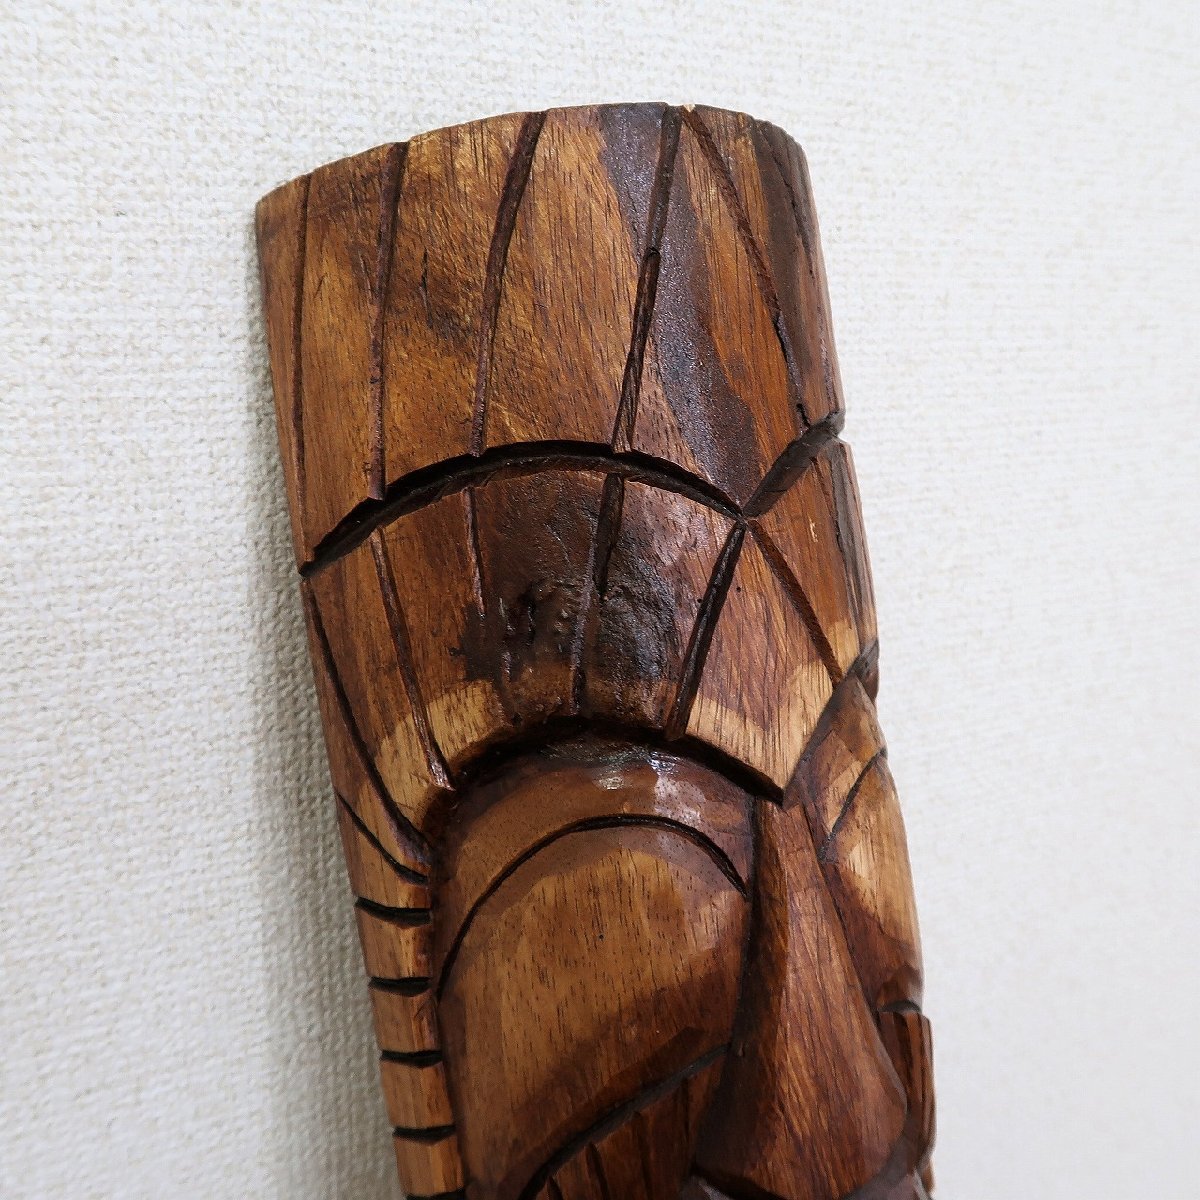 ティキカナロア 木彫りの壁掛けレリーフ 1m TIKI KANALOA ハワイアン雑貨 ティキのお面【アウトレット】【返品不可】350486_画像7